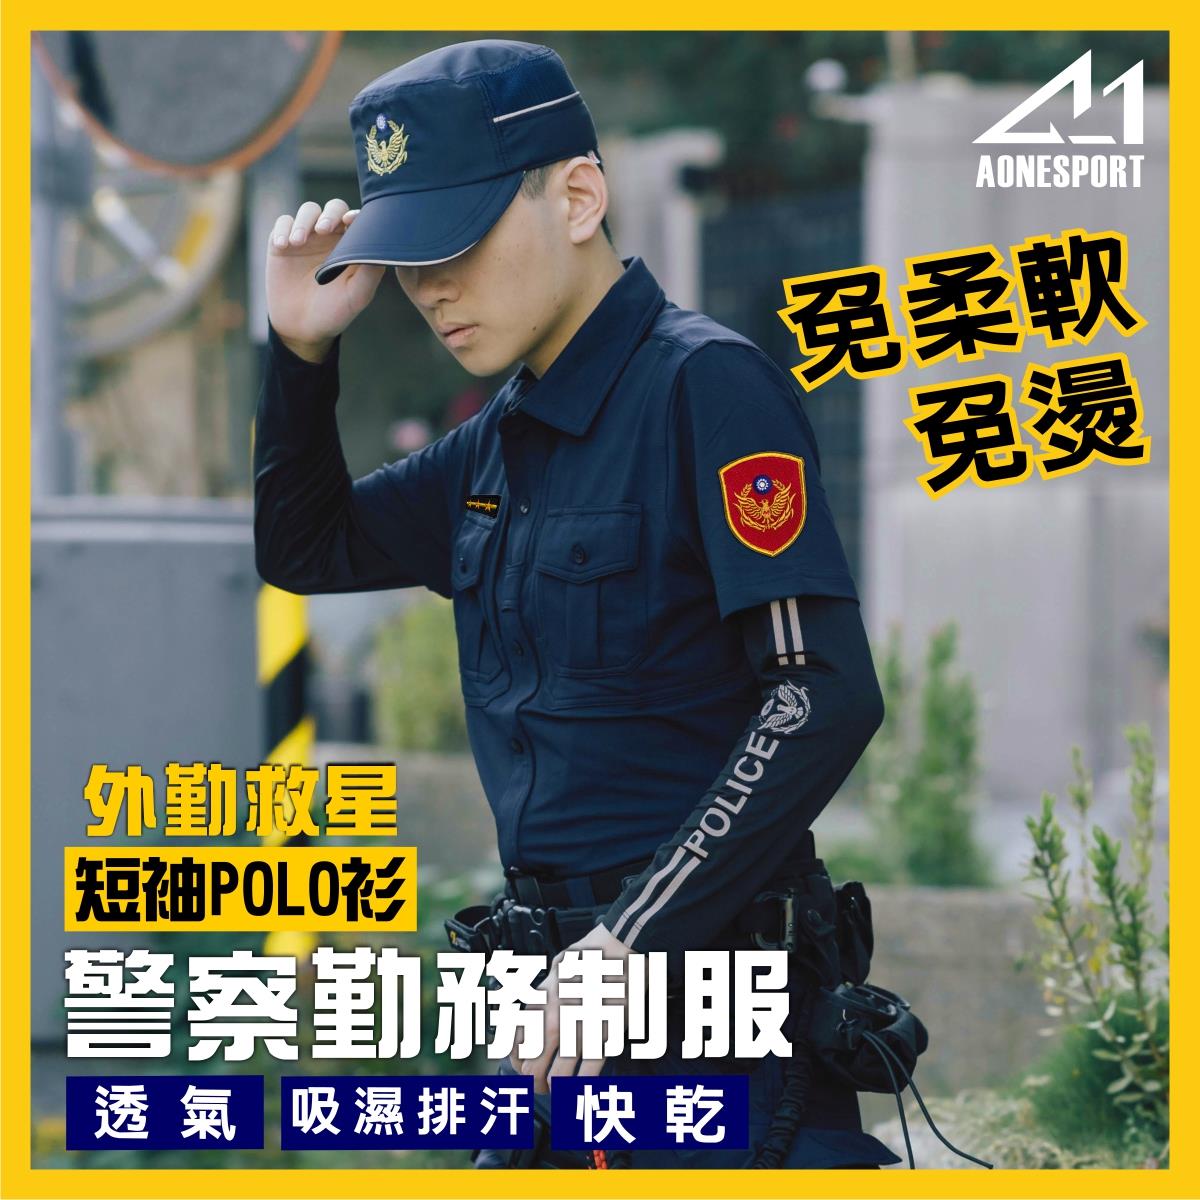 警察制服POLO衫-82047-兩件套組,佳豐有限公司